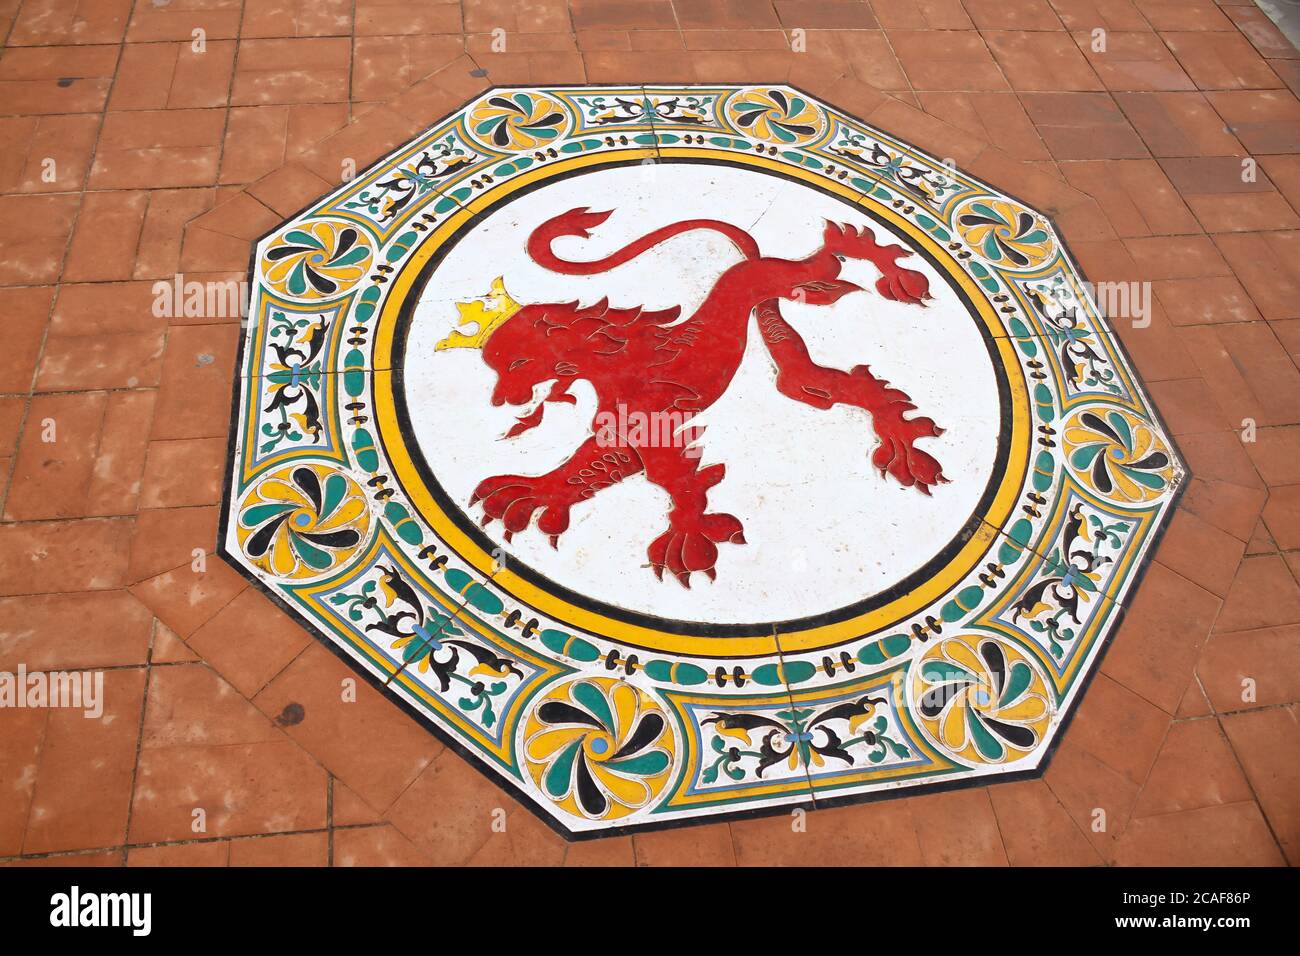 Séville,Espagne-02-06-17: Un beau mur carreaux de céramique avec un motif ancien décoré sur le sol place de l'Espagne. Banque D'Images